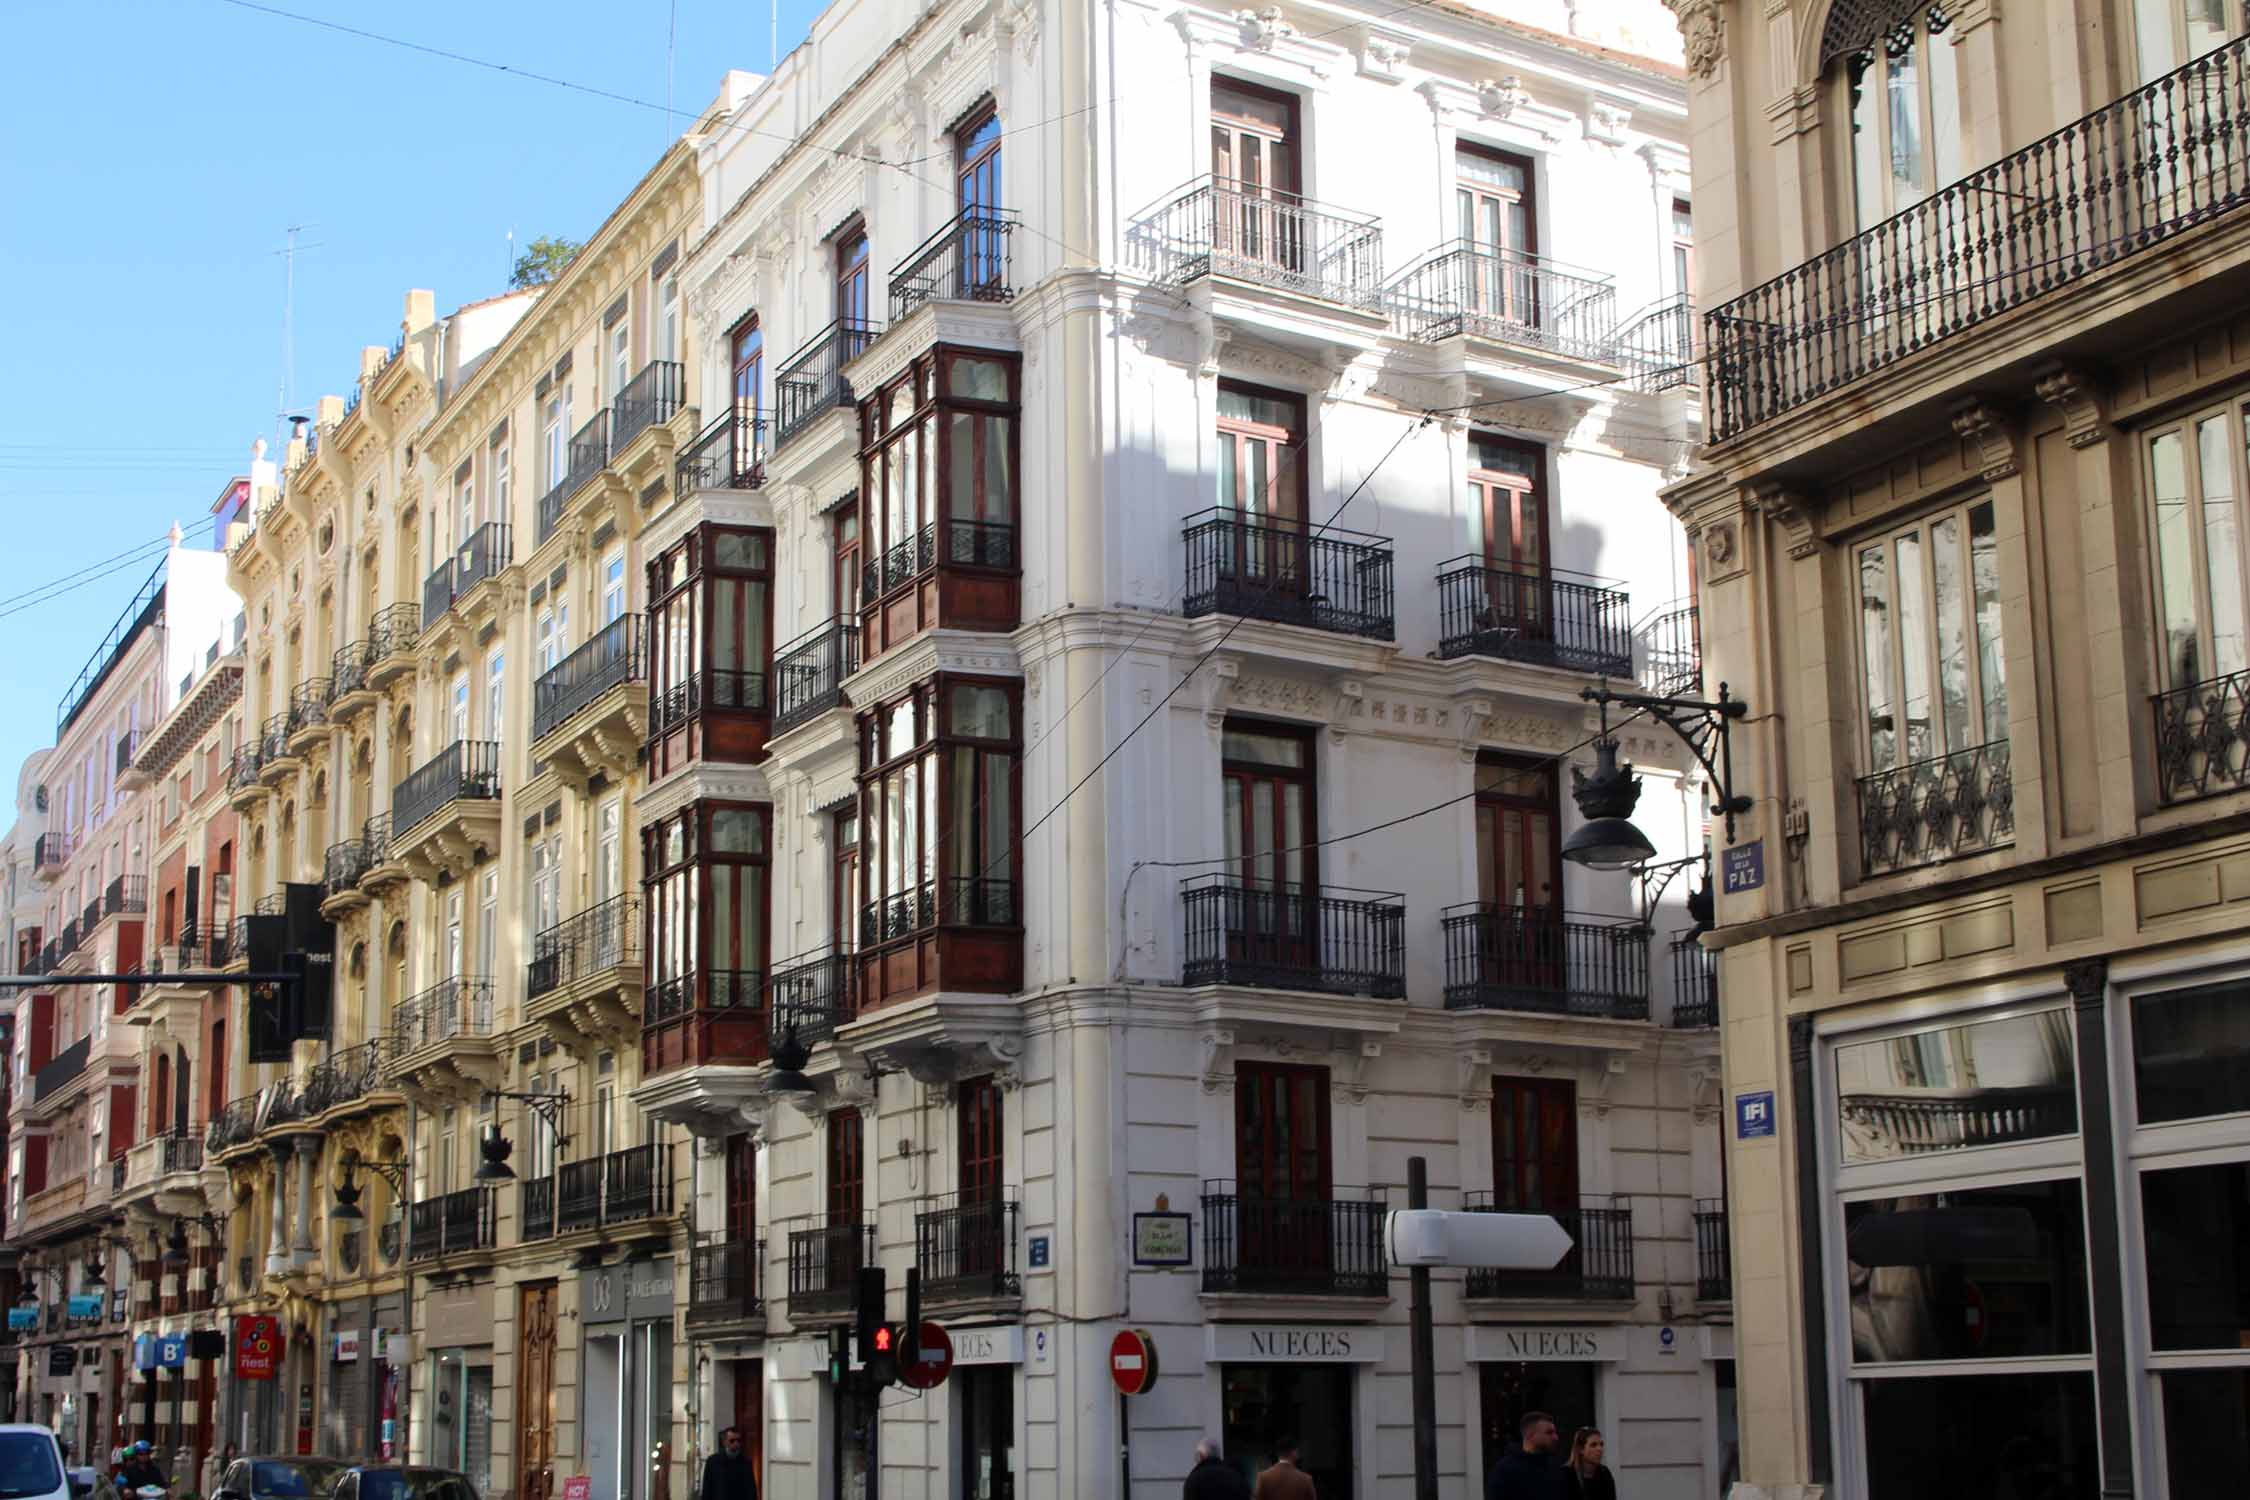 Valence, bâtiments typiques